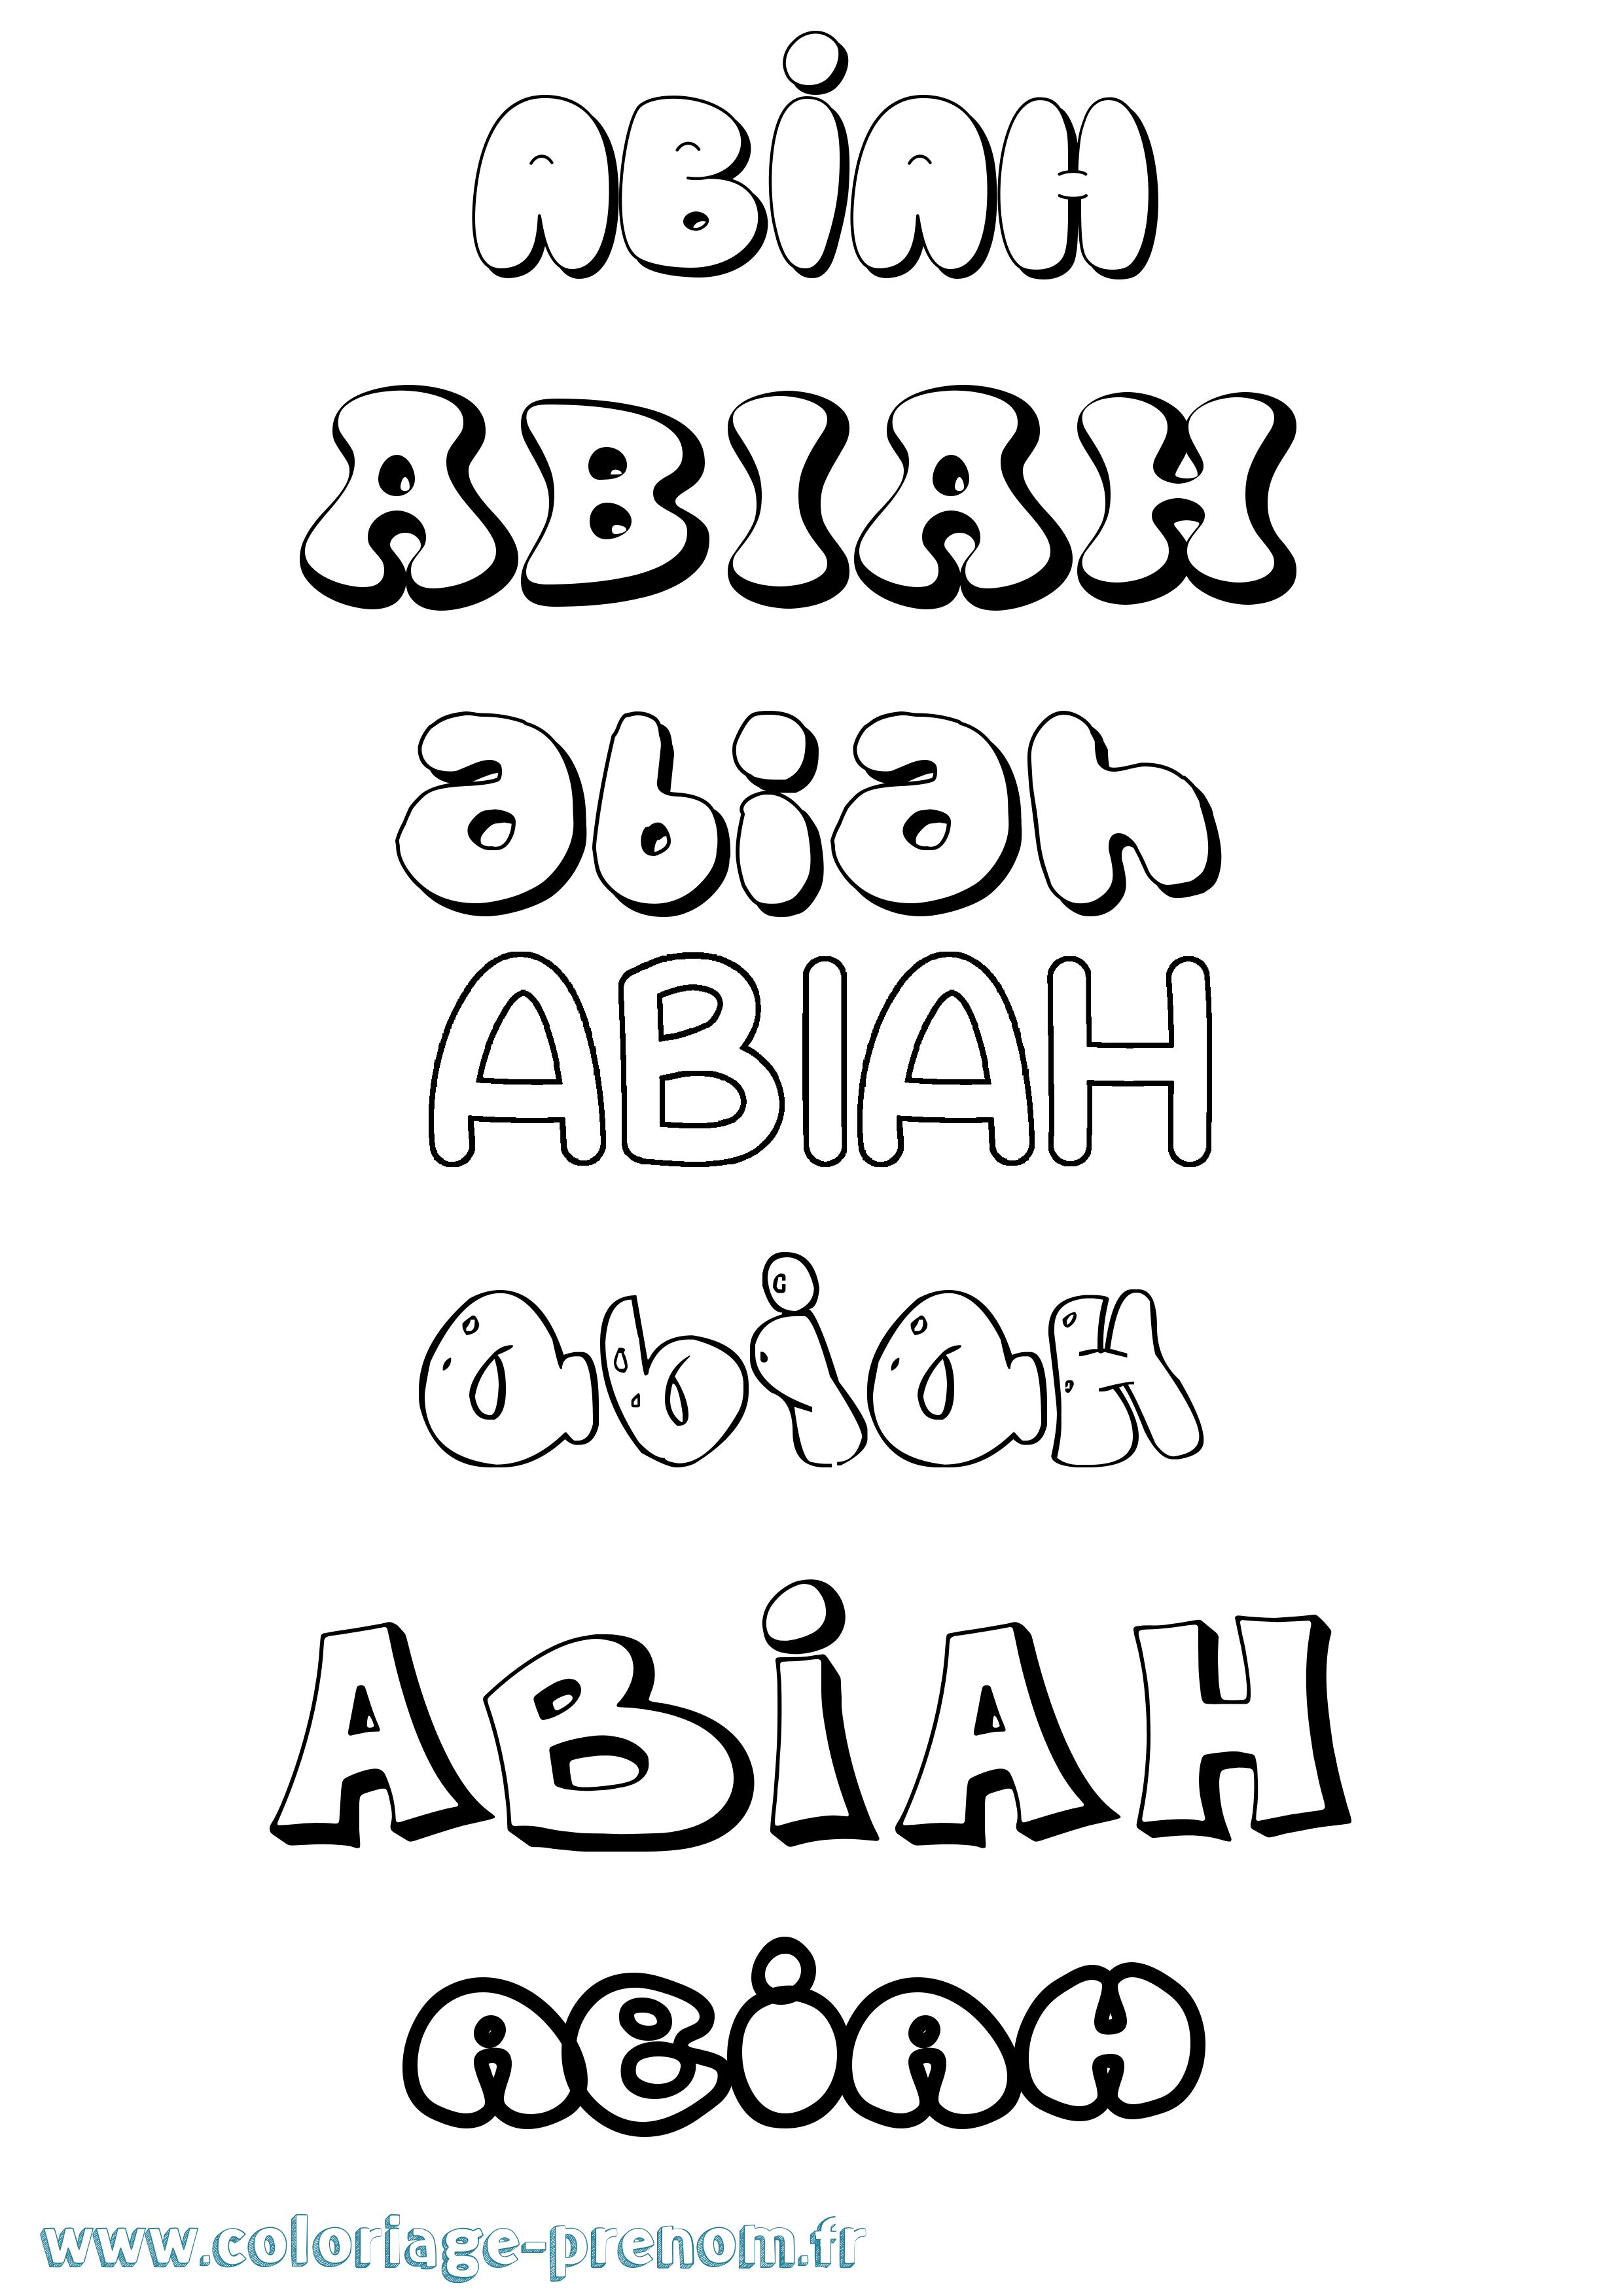 Coloriage prénom Abiah Bubble